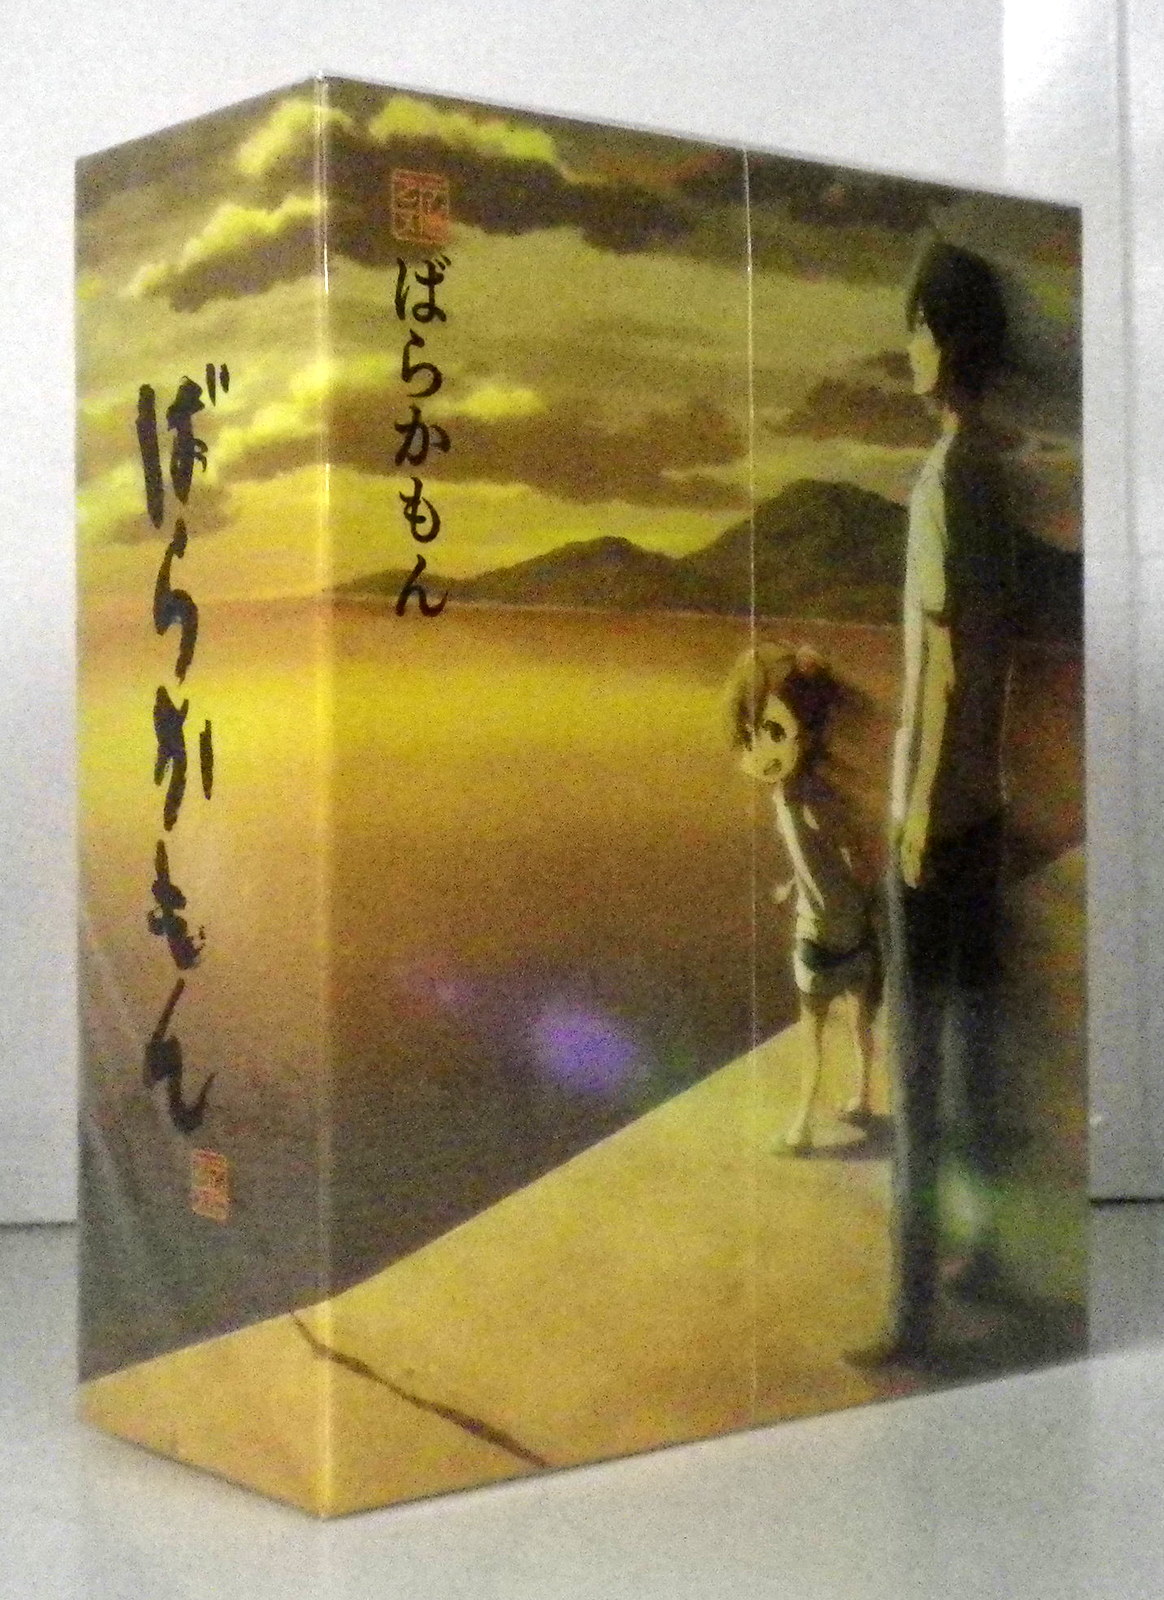 アニメ ばらかもん 初回版Blu-ray 全4巻セット www.sudouestprimeurs.fr